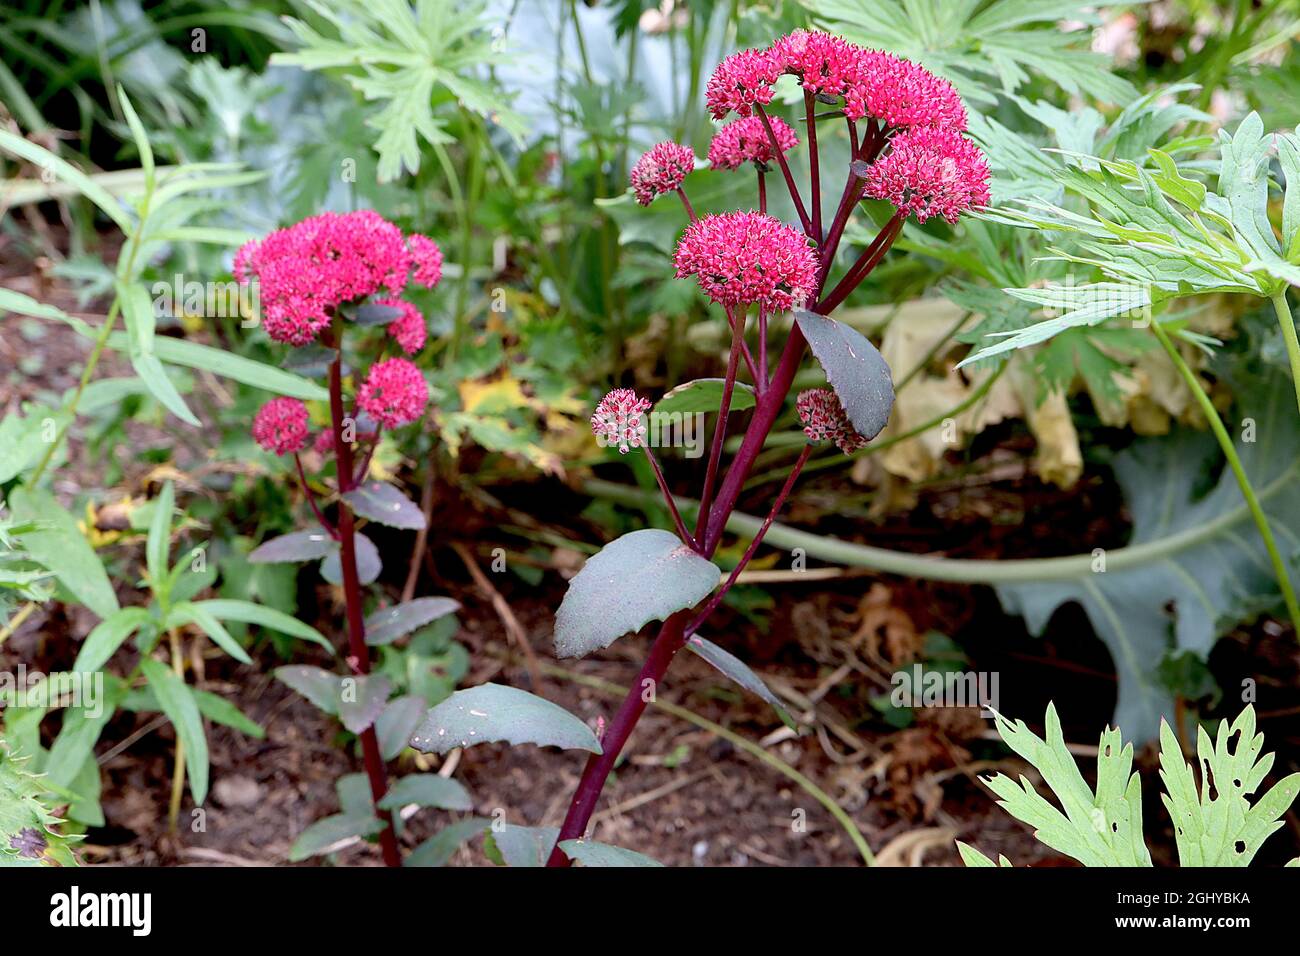 Hylotelephium telephium ‘Red Cauli’ Sedum Red Cauli – fiori rosa profondi a forma di stella, foglie carnose verde scuro e steli rosso scuro, agosto, Inghilterra, Regno Unito Foto Stock